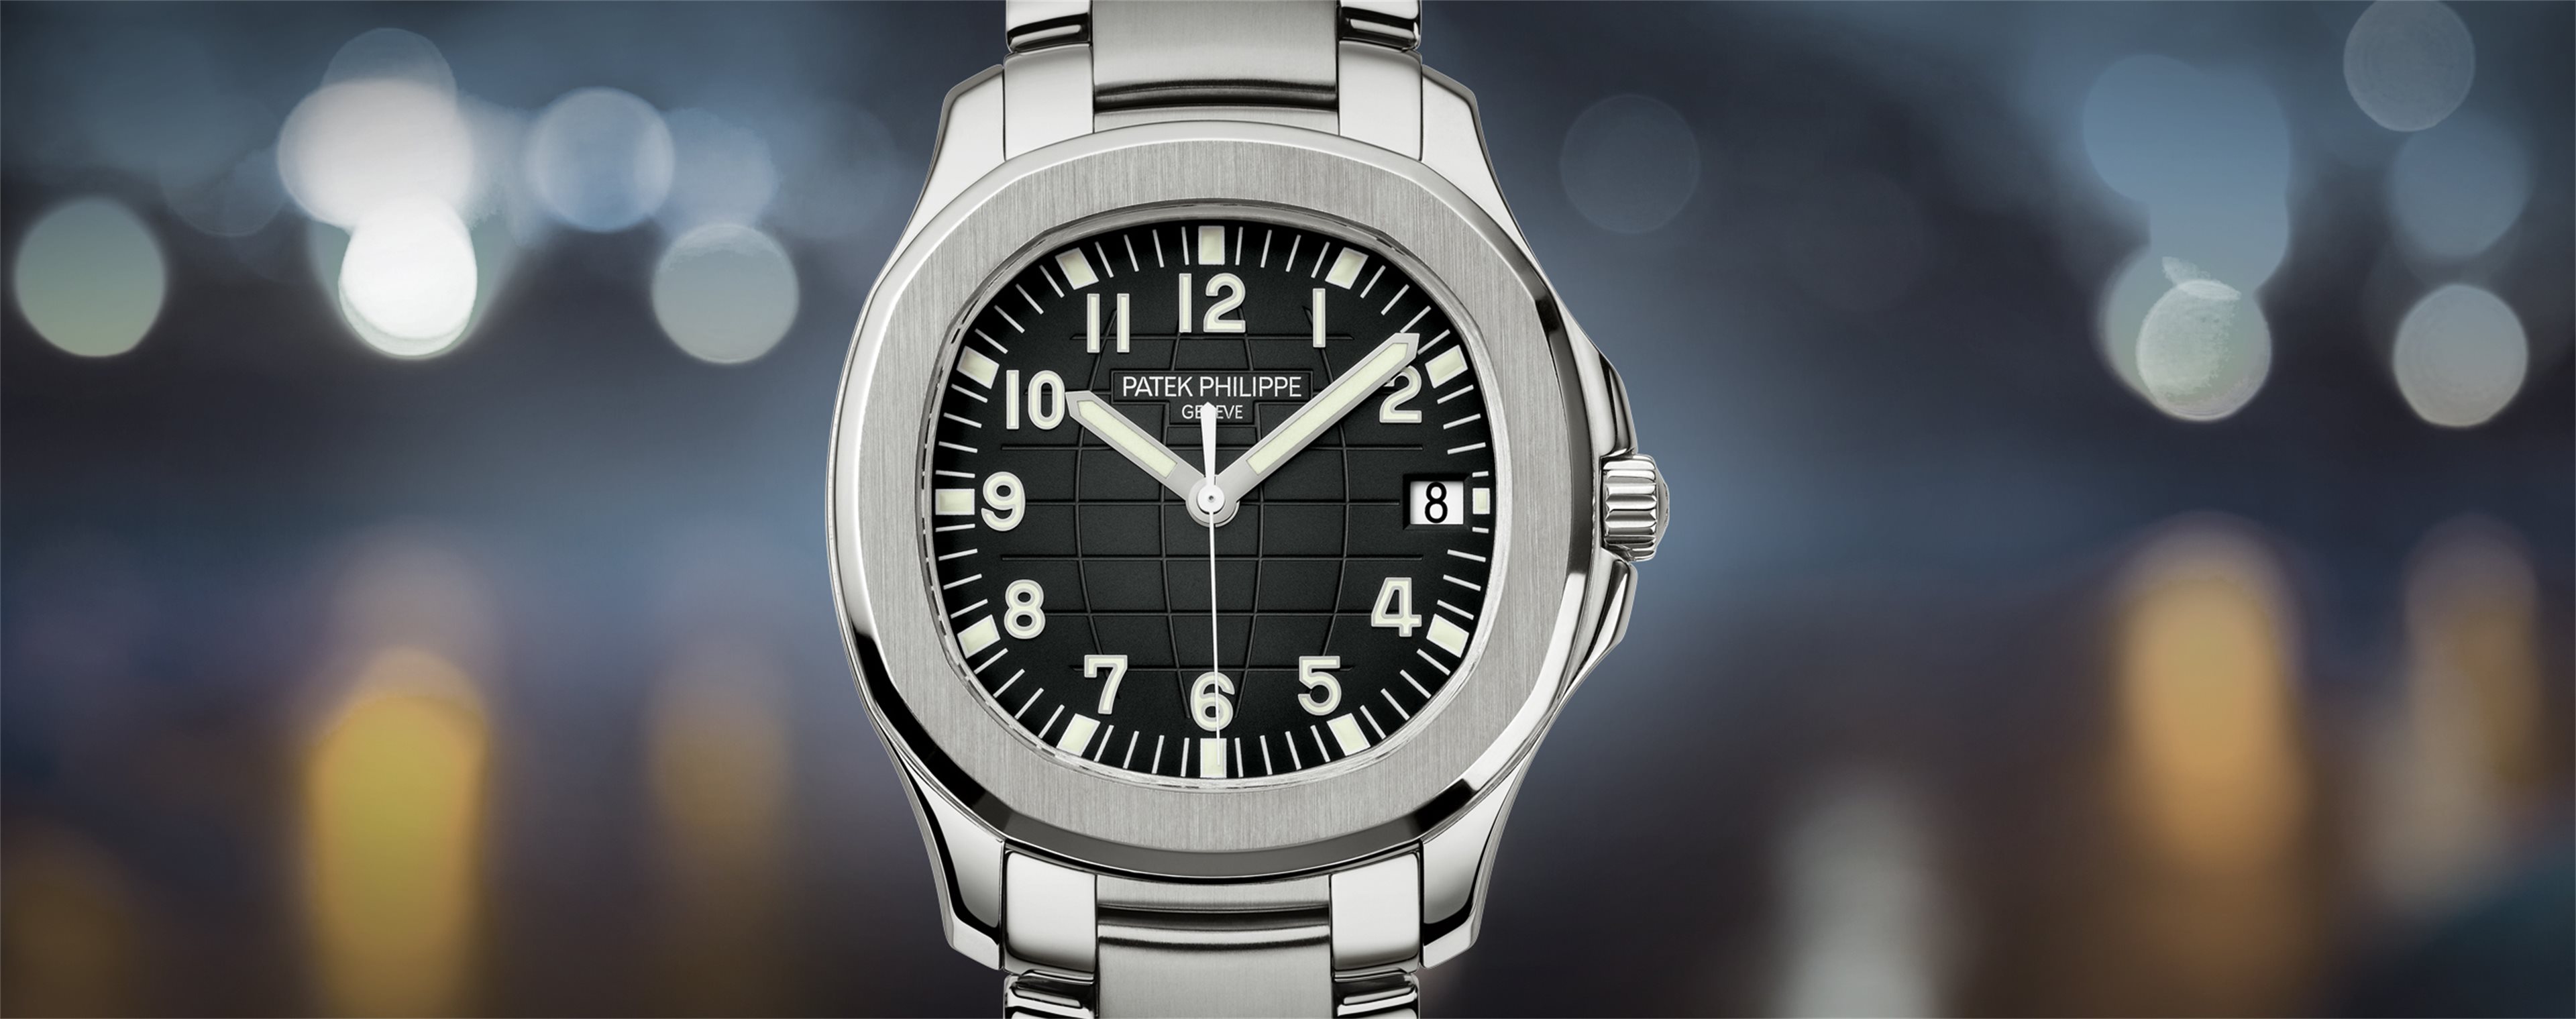 Replica Rolex Cellini Watches